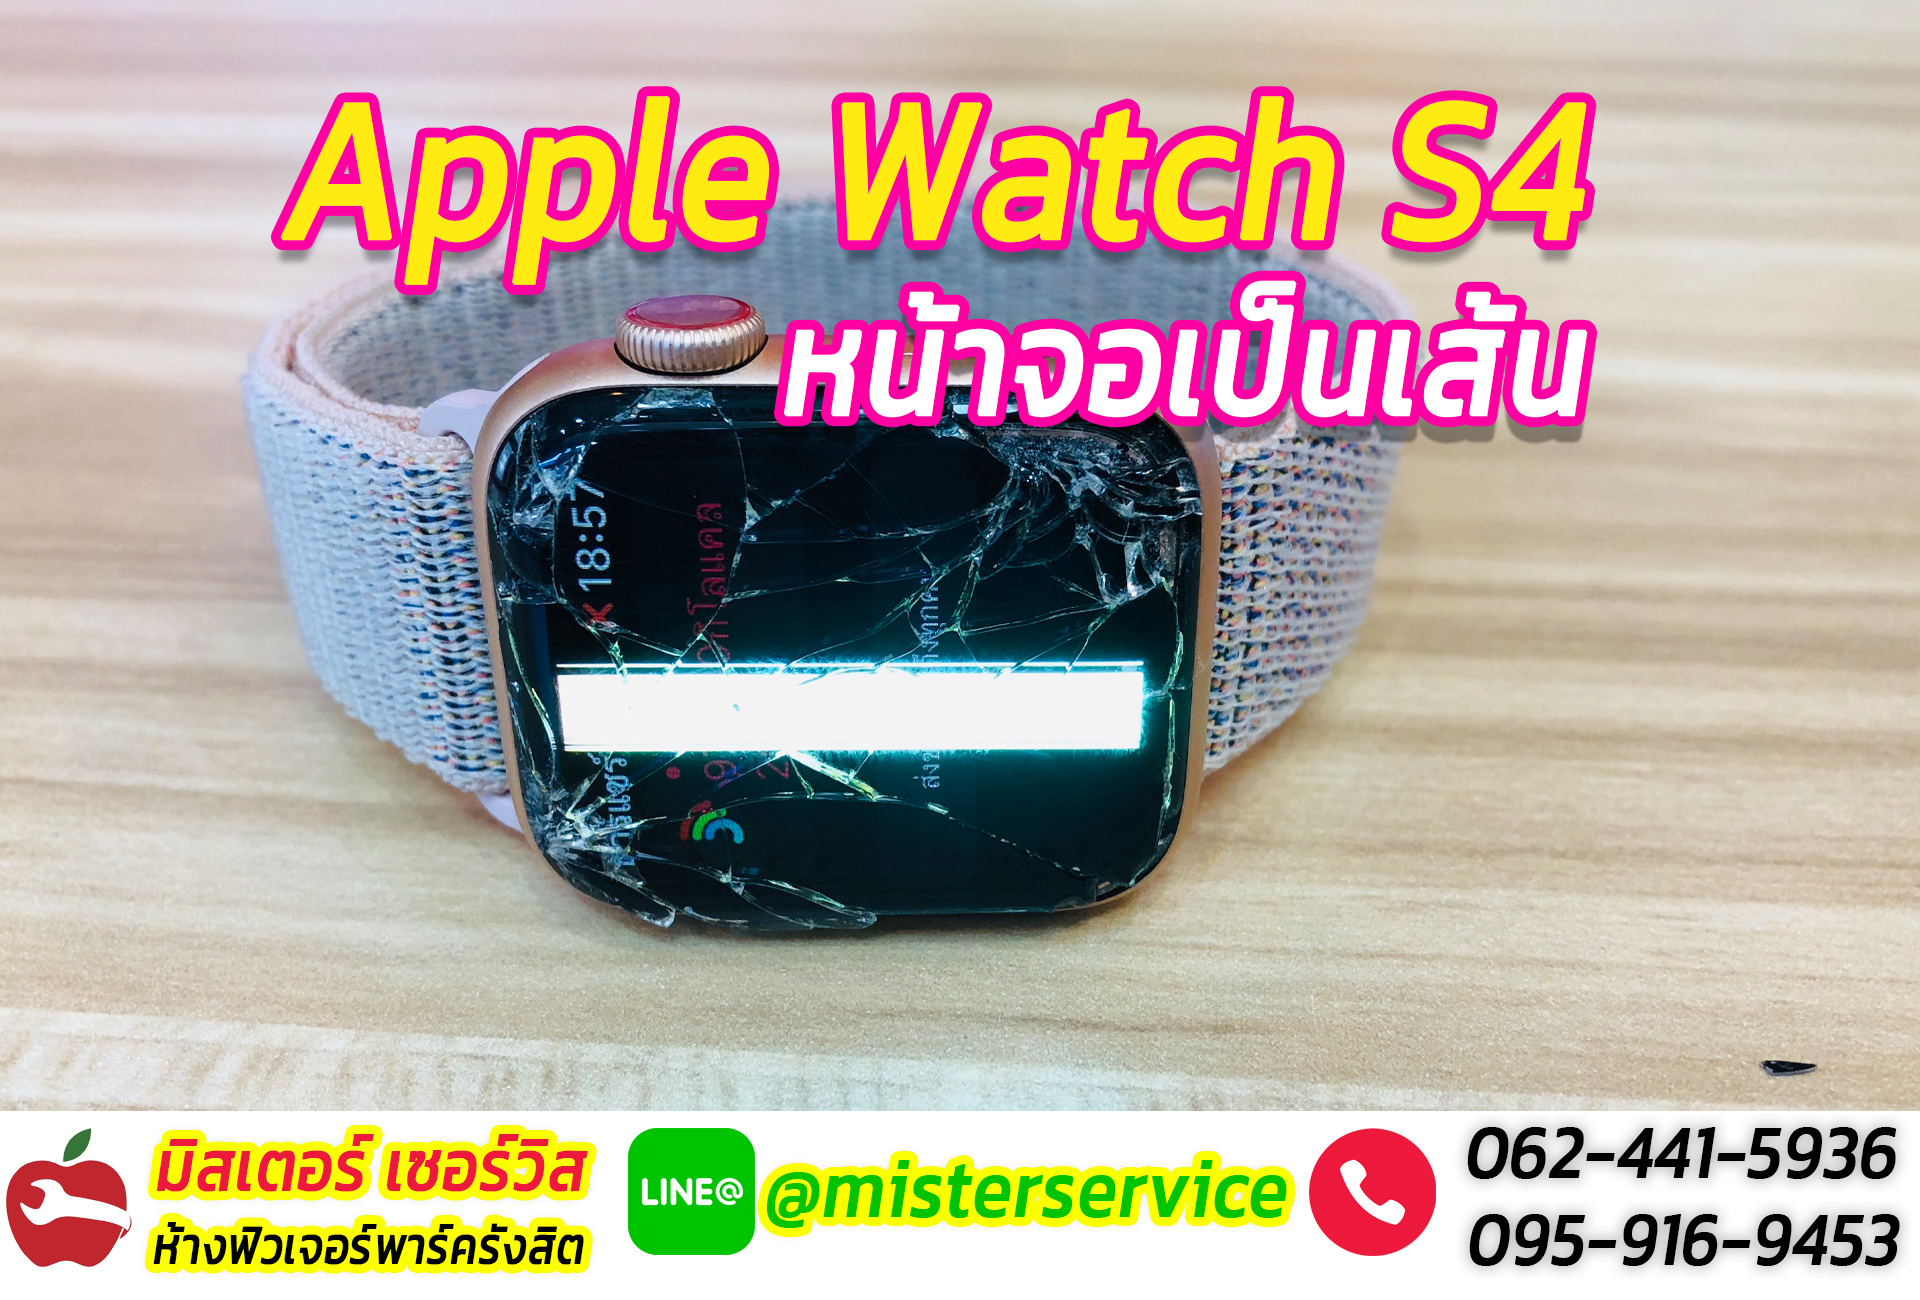 ซ่อม Apple Watch นครสวรรค์